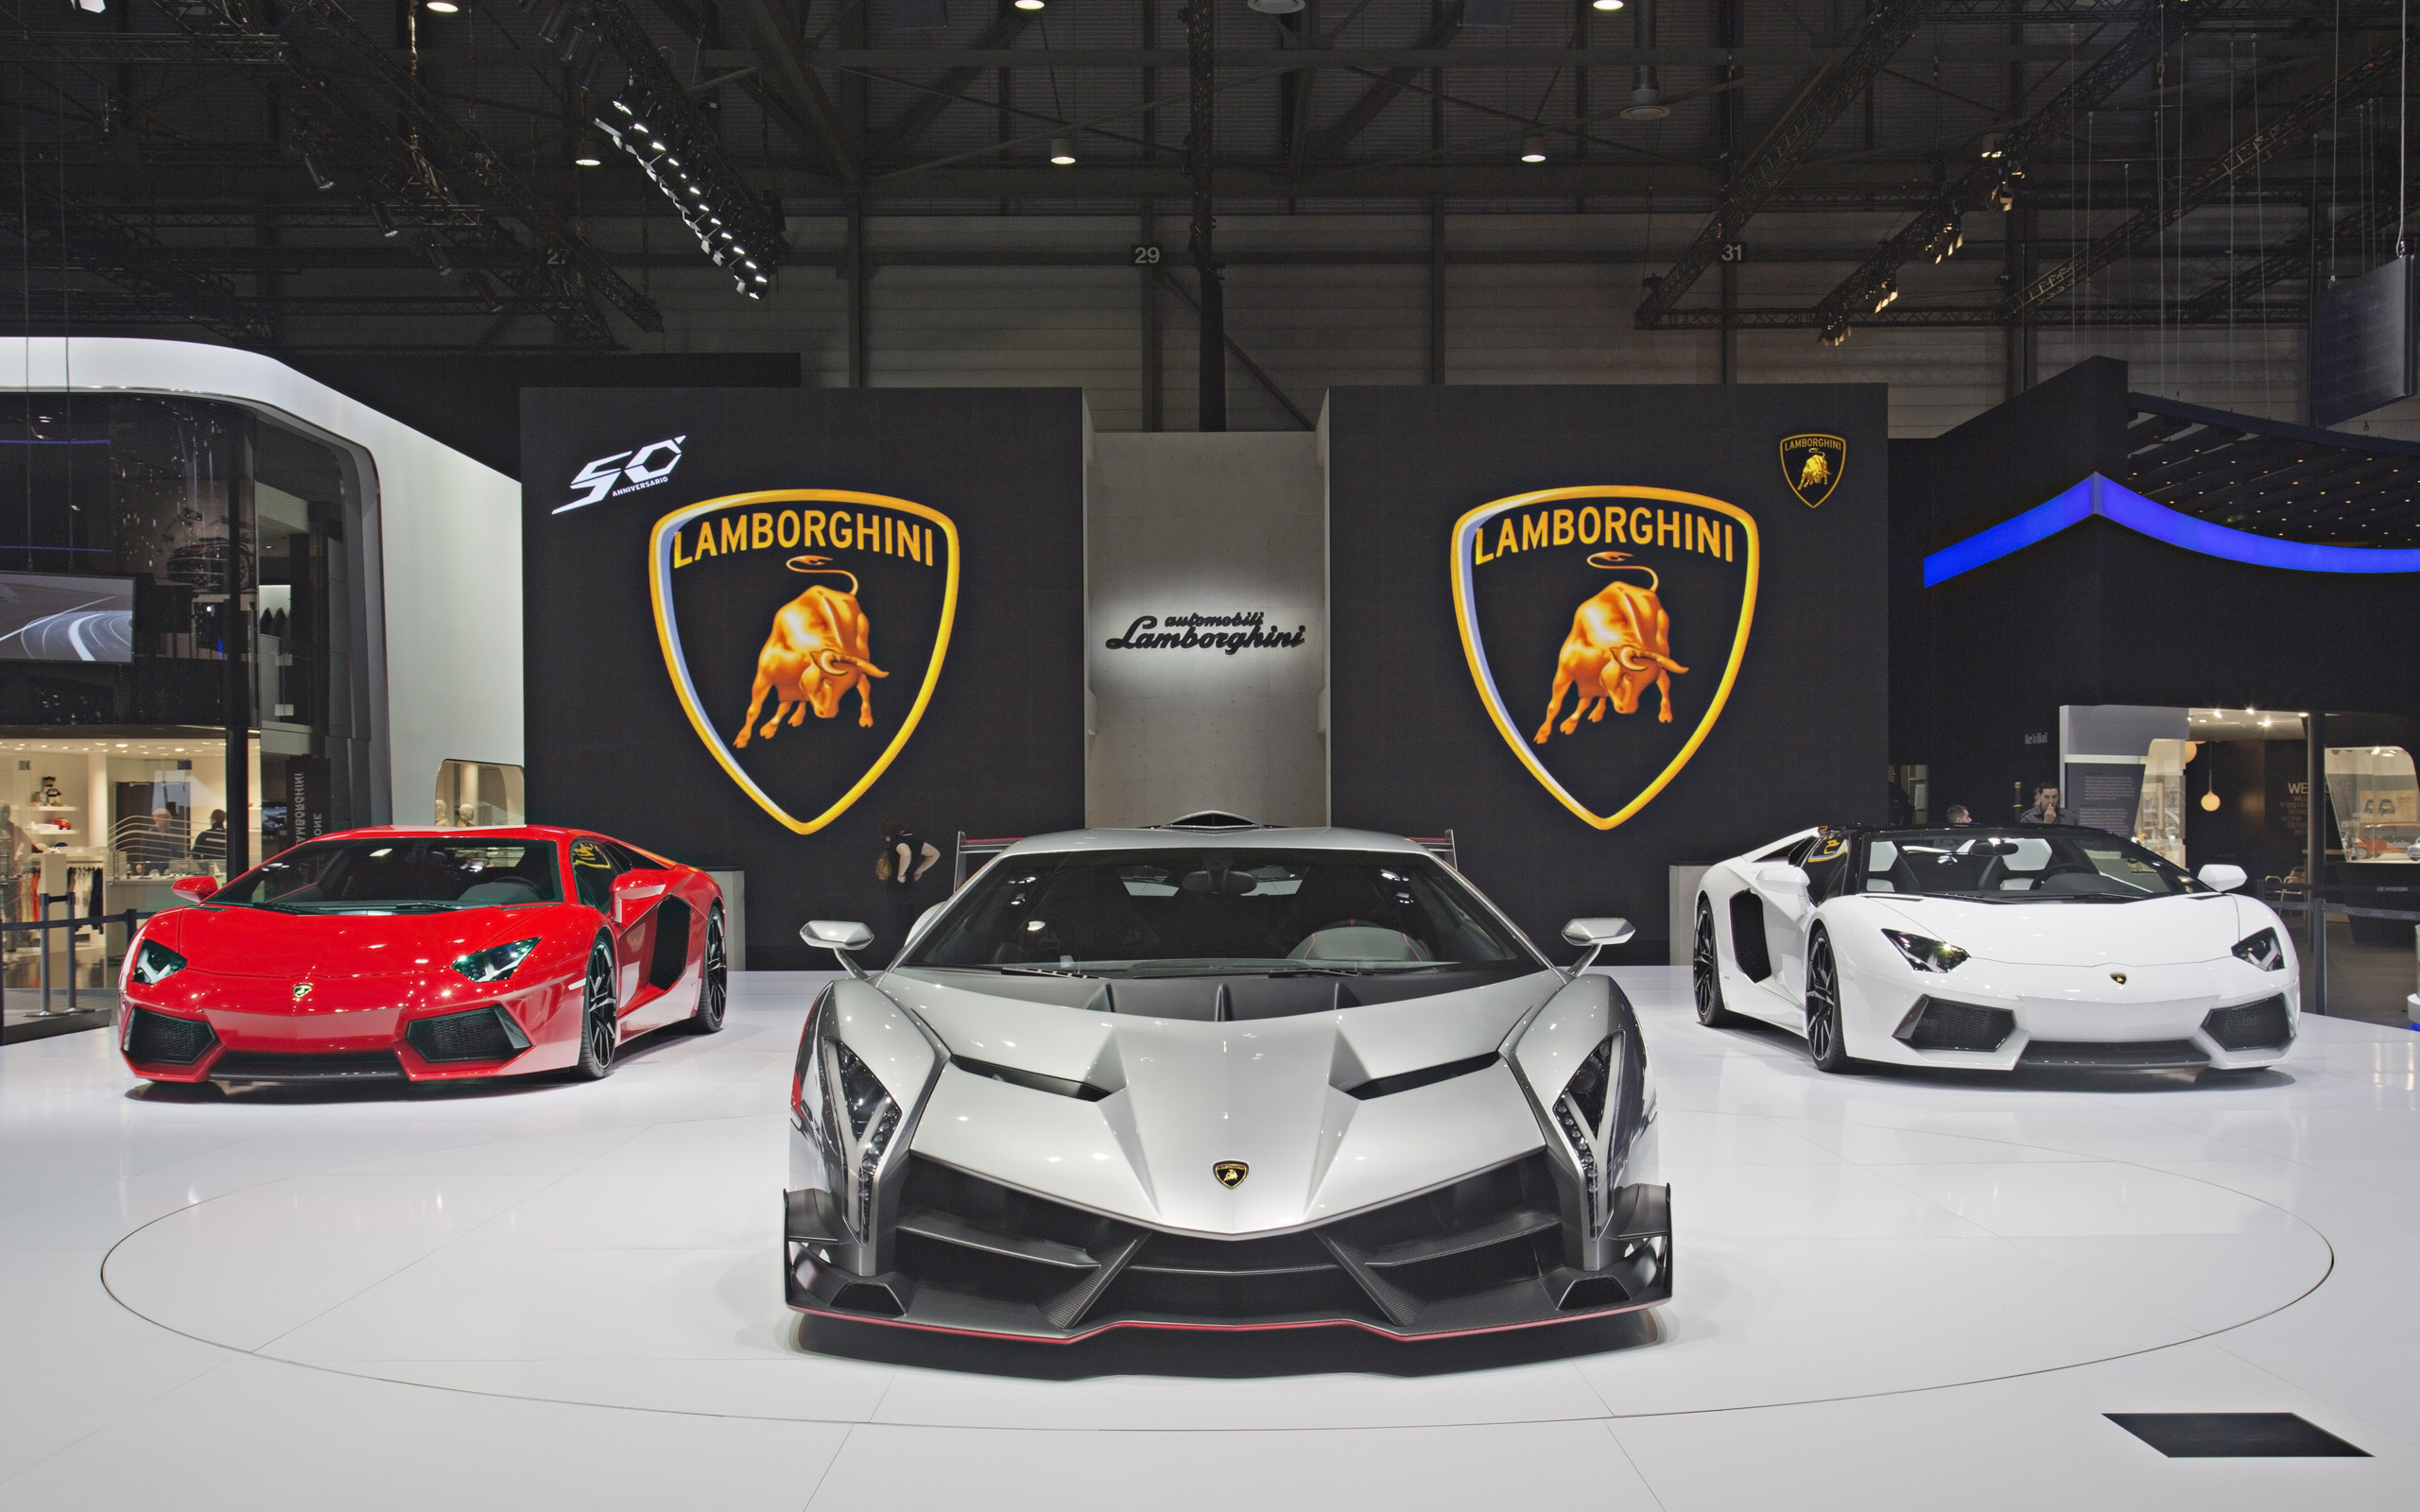 Free download Lamborghini Veneno Wallpaper High Resolution 1325